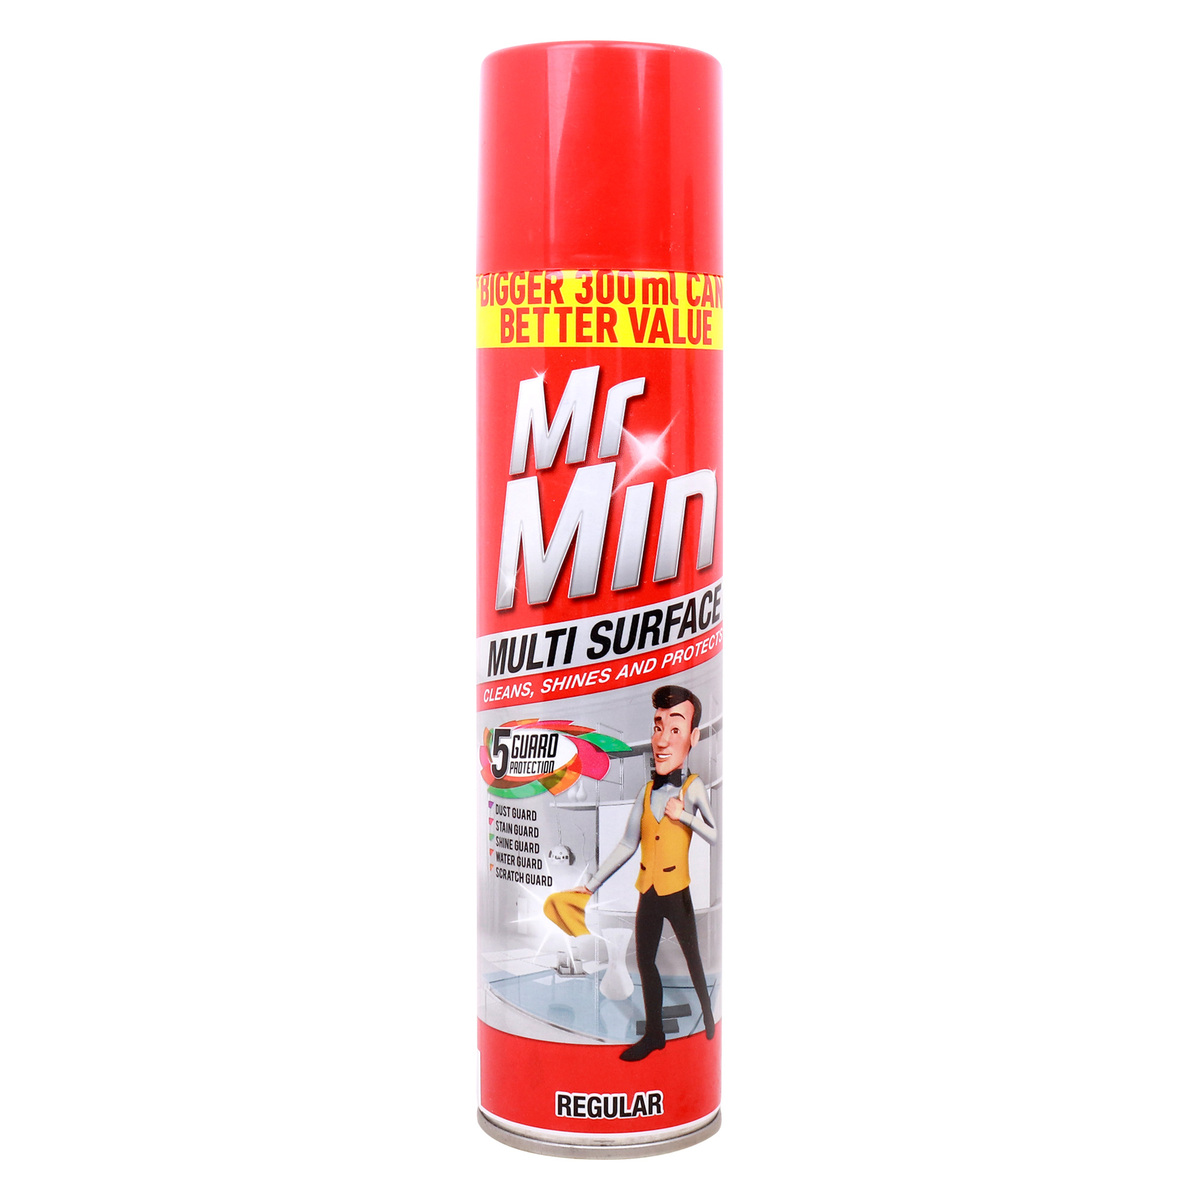 Mr Min Regular Multi Surface Cleaner 300 ml